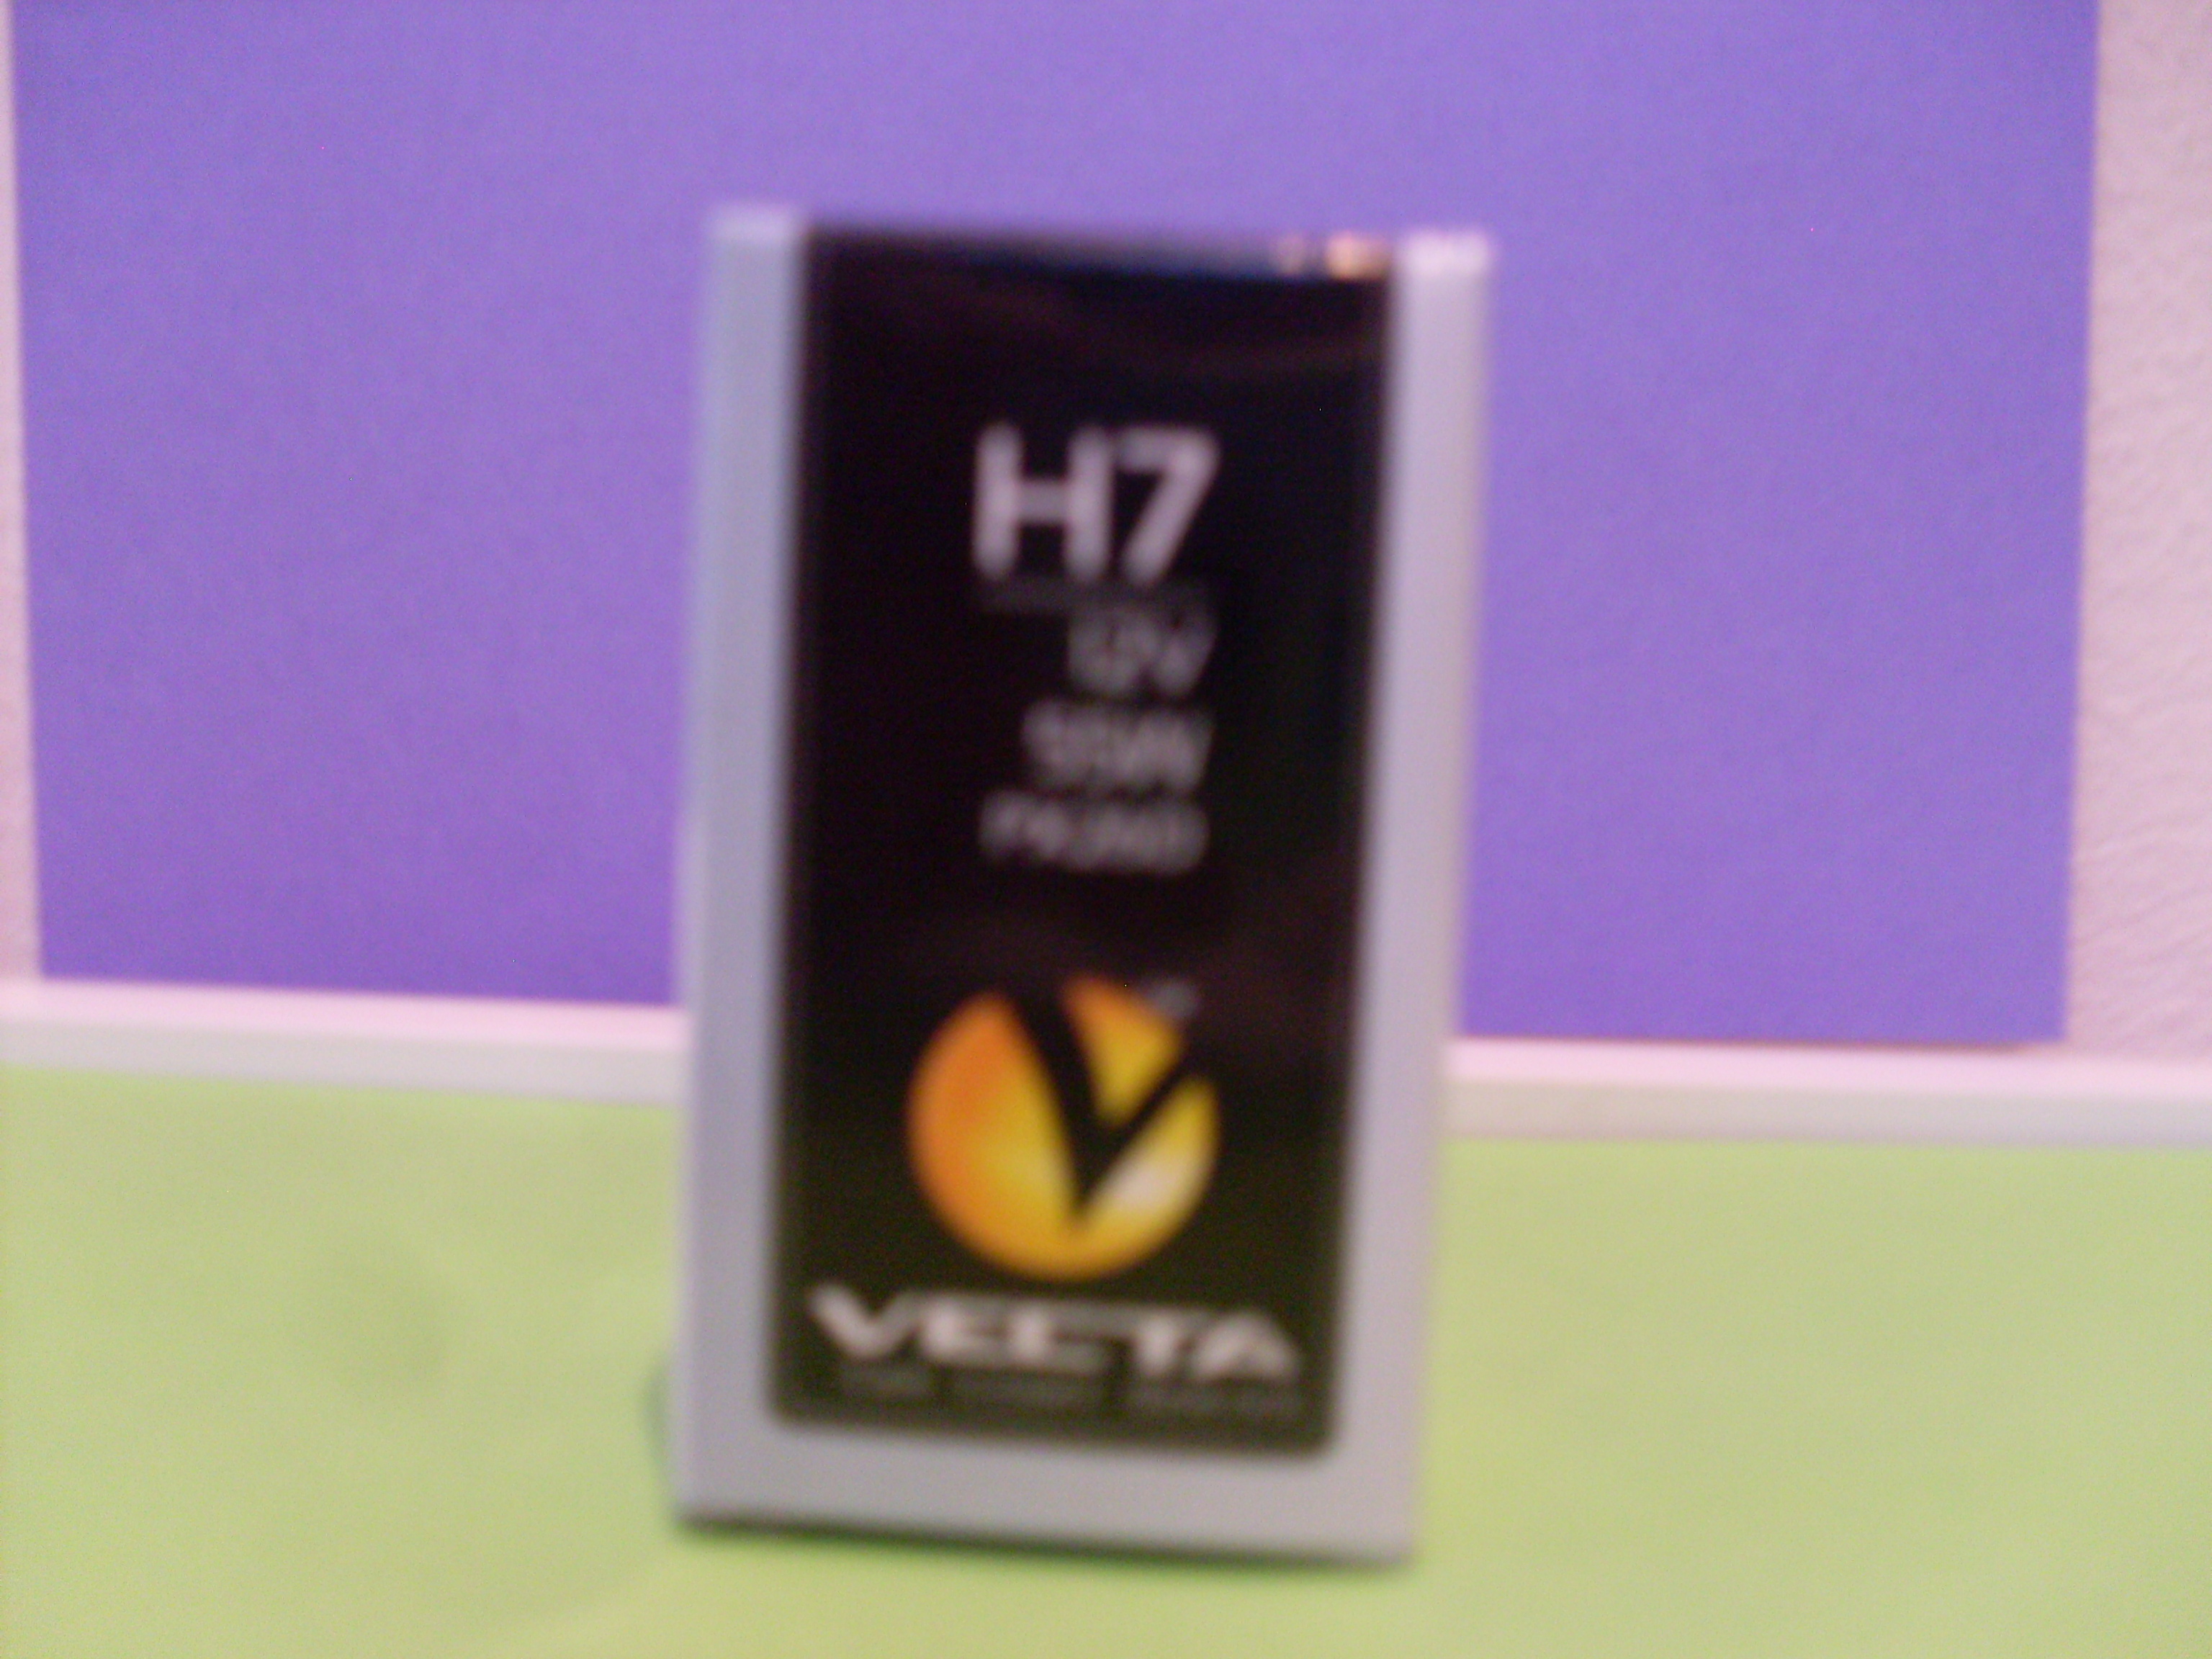 H7 Vecta